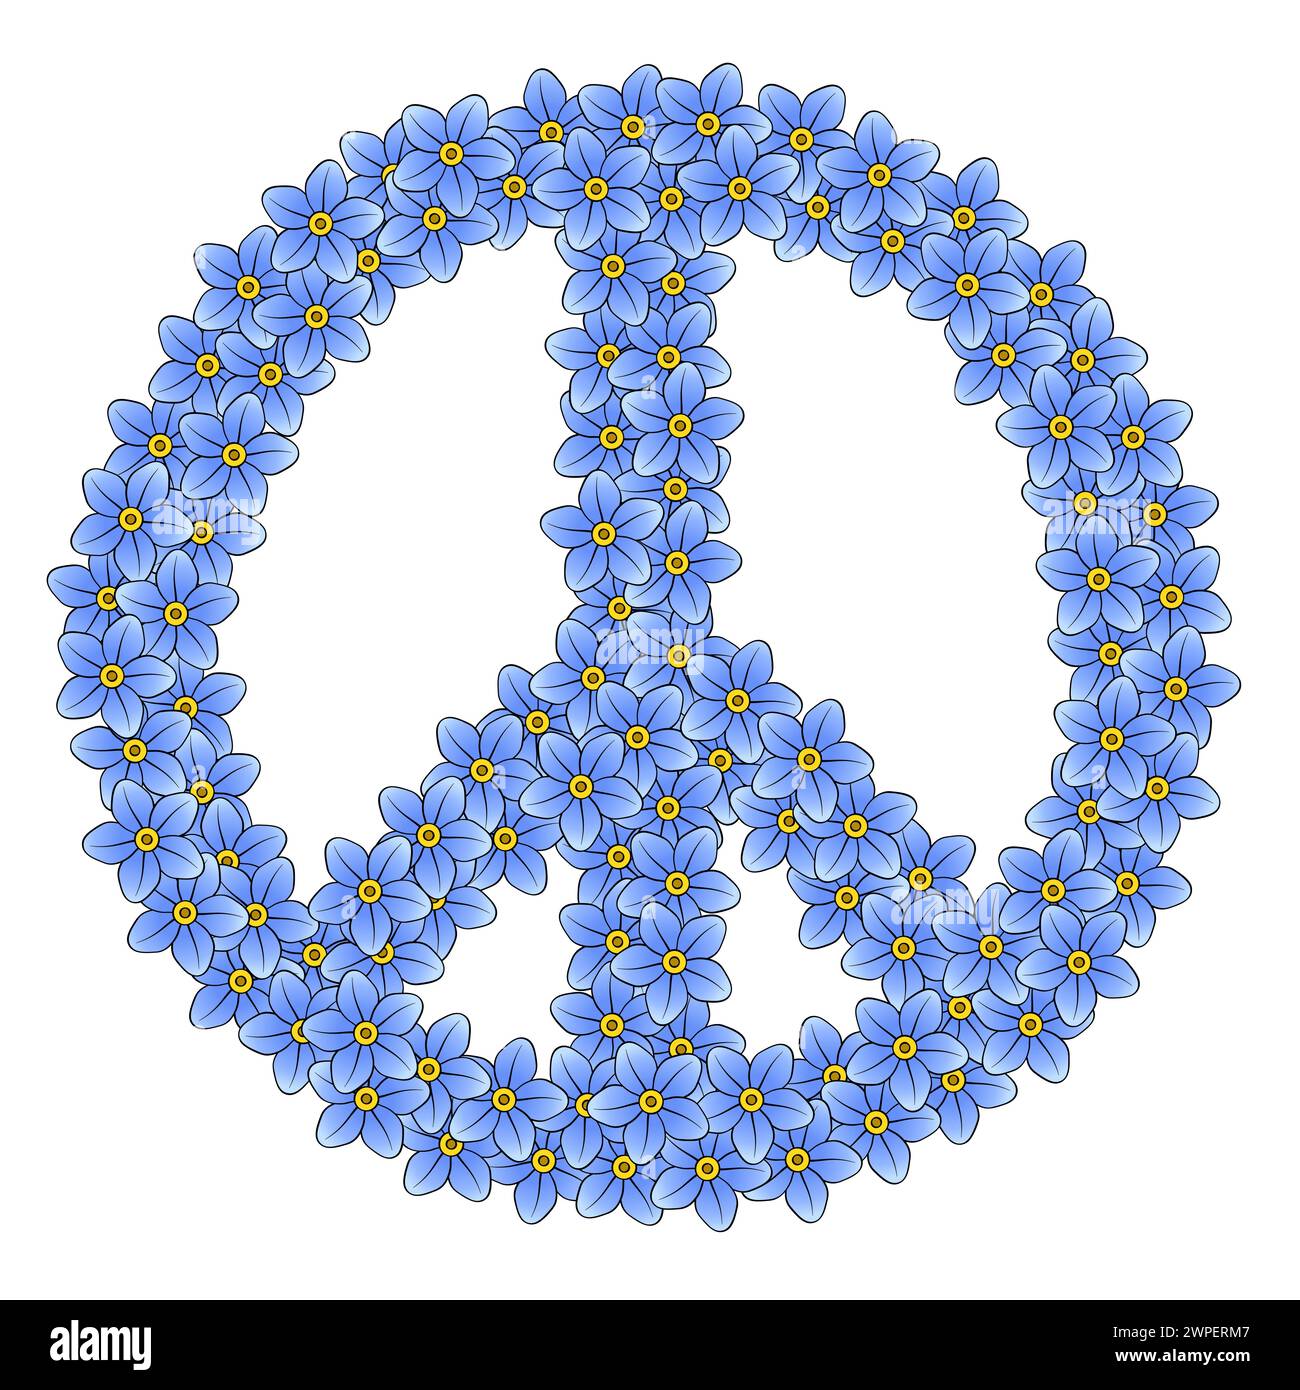 Signe de paix fait de 111 fleurs oubliées. Composé de 111 fleurs bleues disposées aléatoirement, symbole du mouvement anti-guerre. Banque D'Images